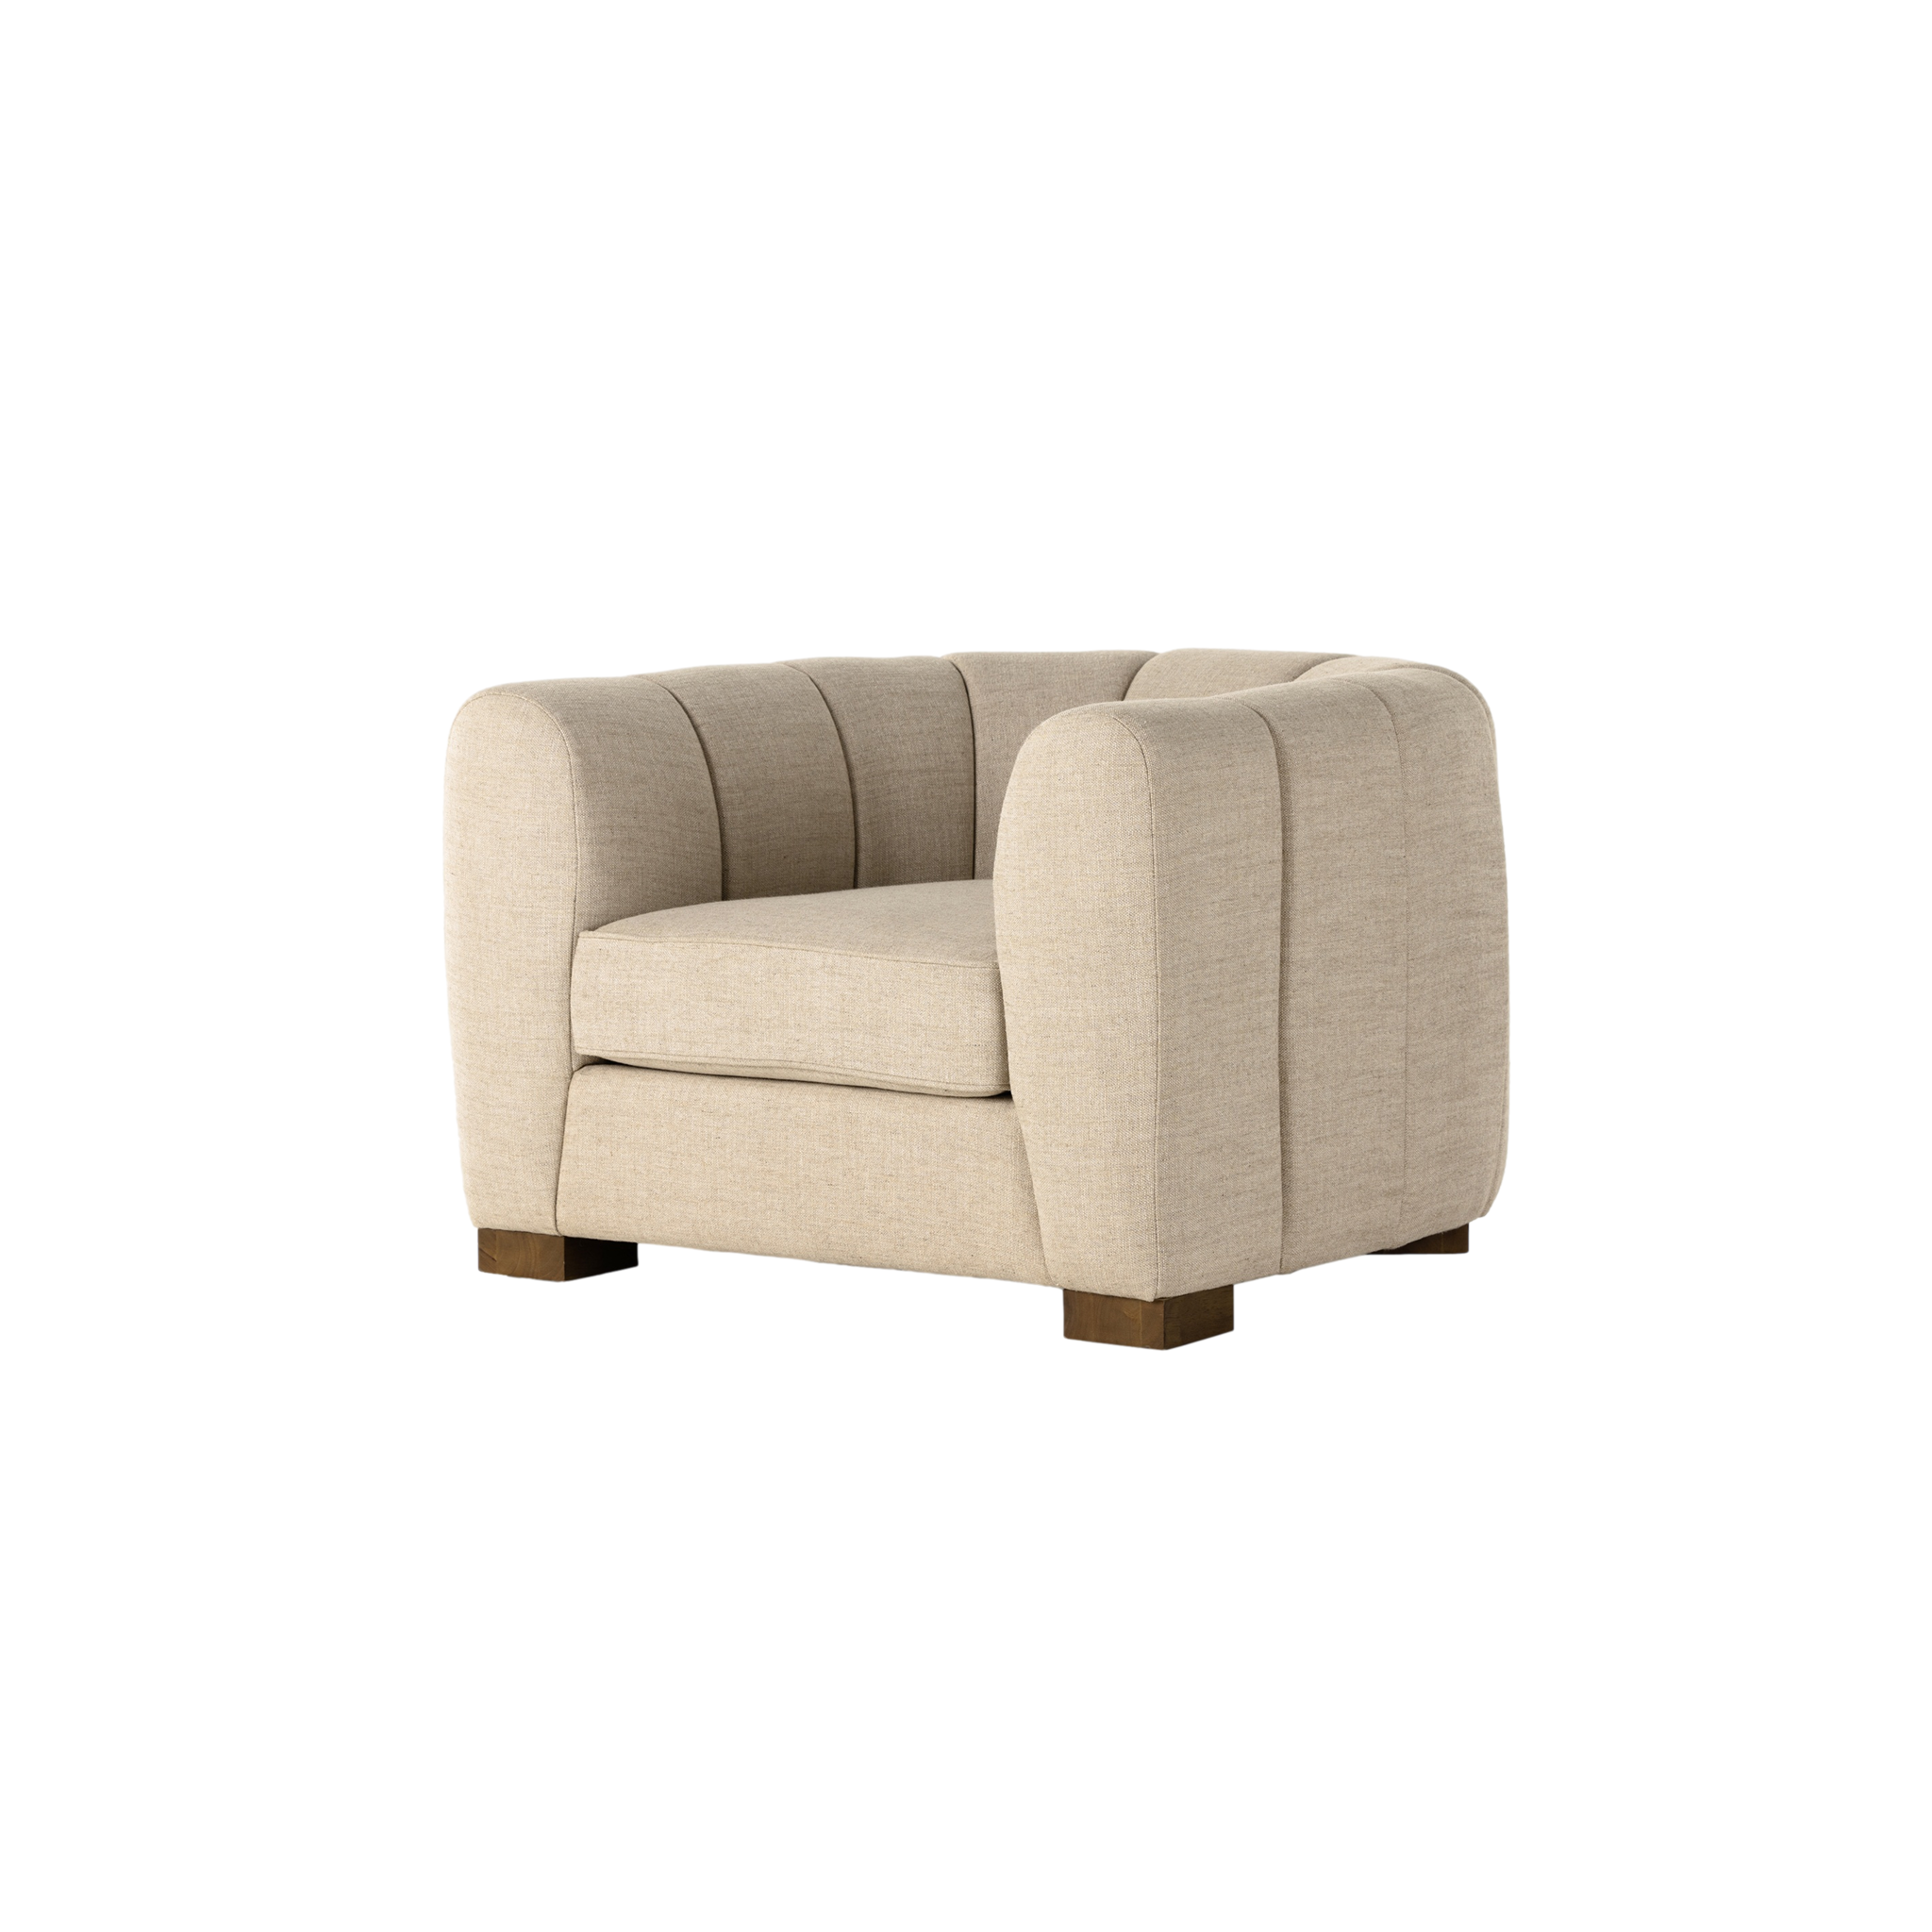 Bernadette Chair (Wheat)